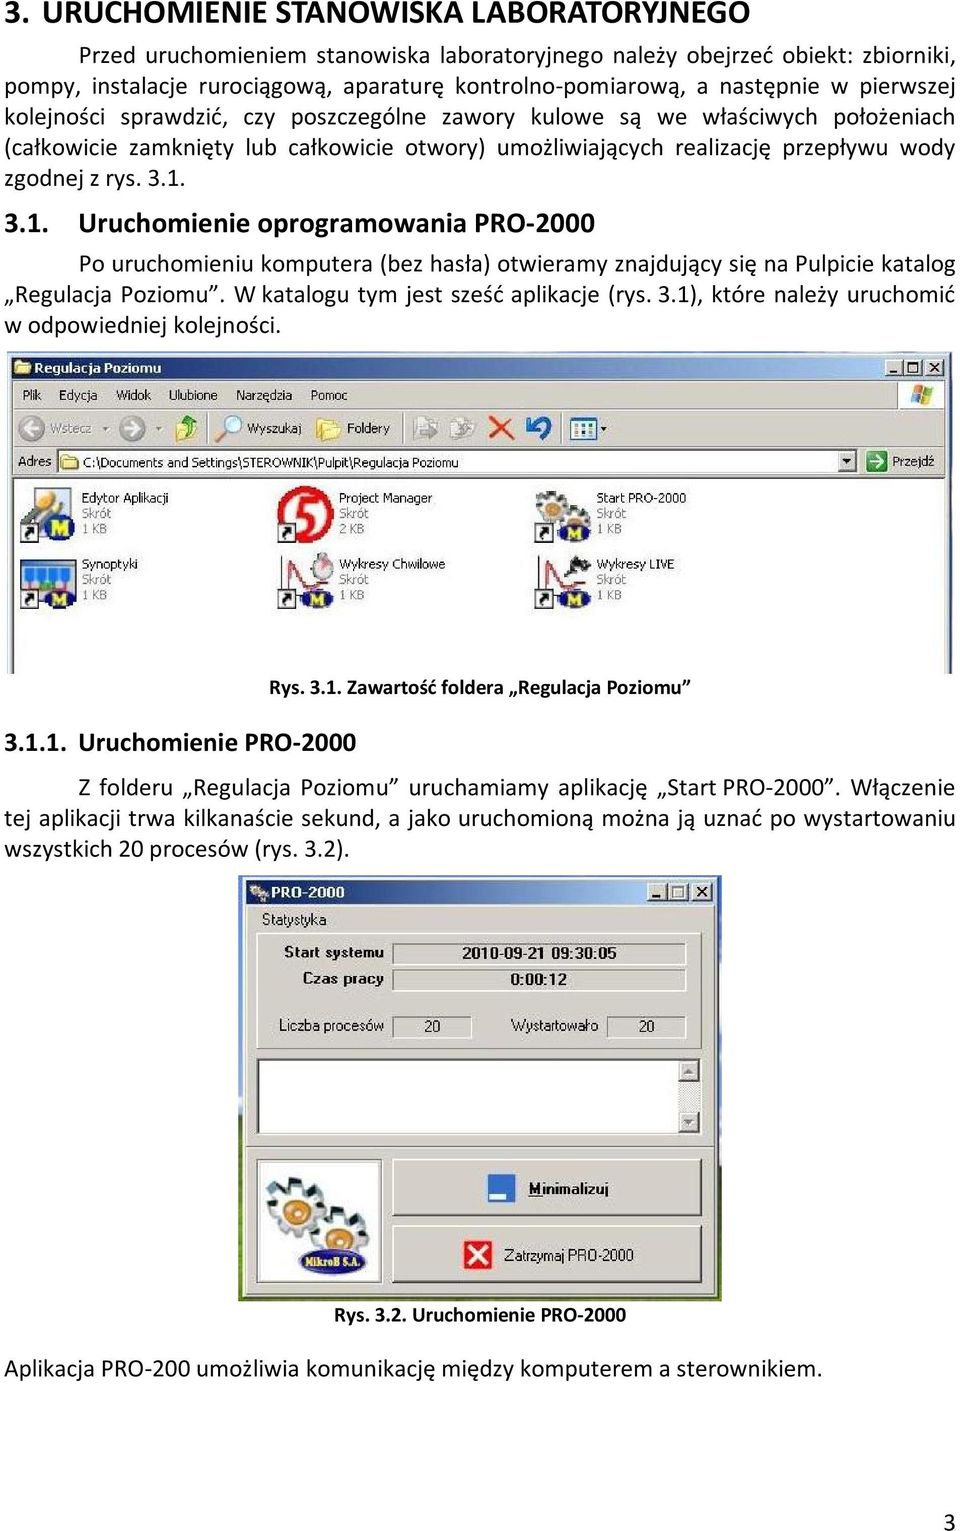 3.1. Uruchomienie oprogramowania PRO-2000 Po uruchomieniu komputera (bez hasła) otwieramy znajdujący się na Pulpicie katalog Regulacja Poziomu. W katalogu tym jest sześć aplikacje (rys. 3.